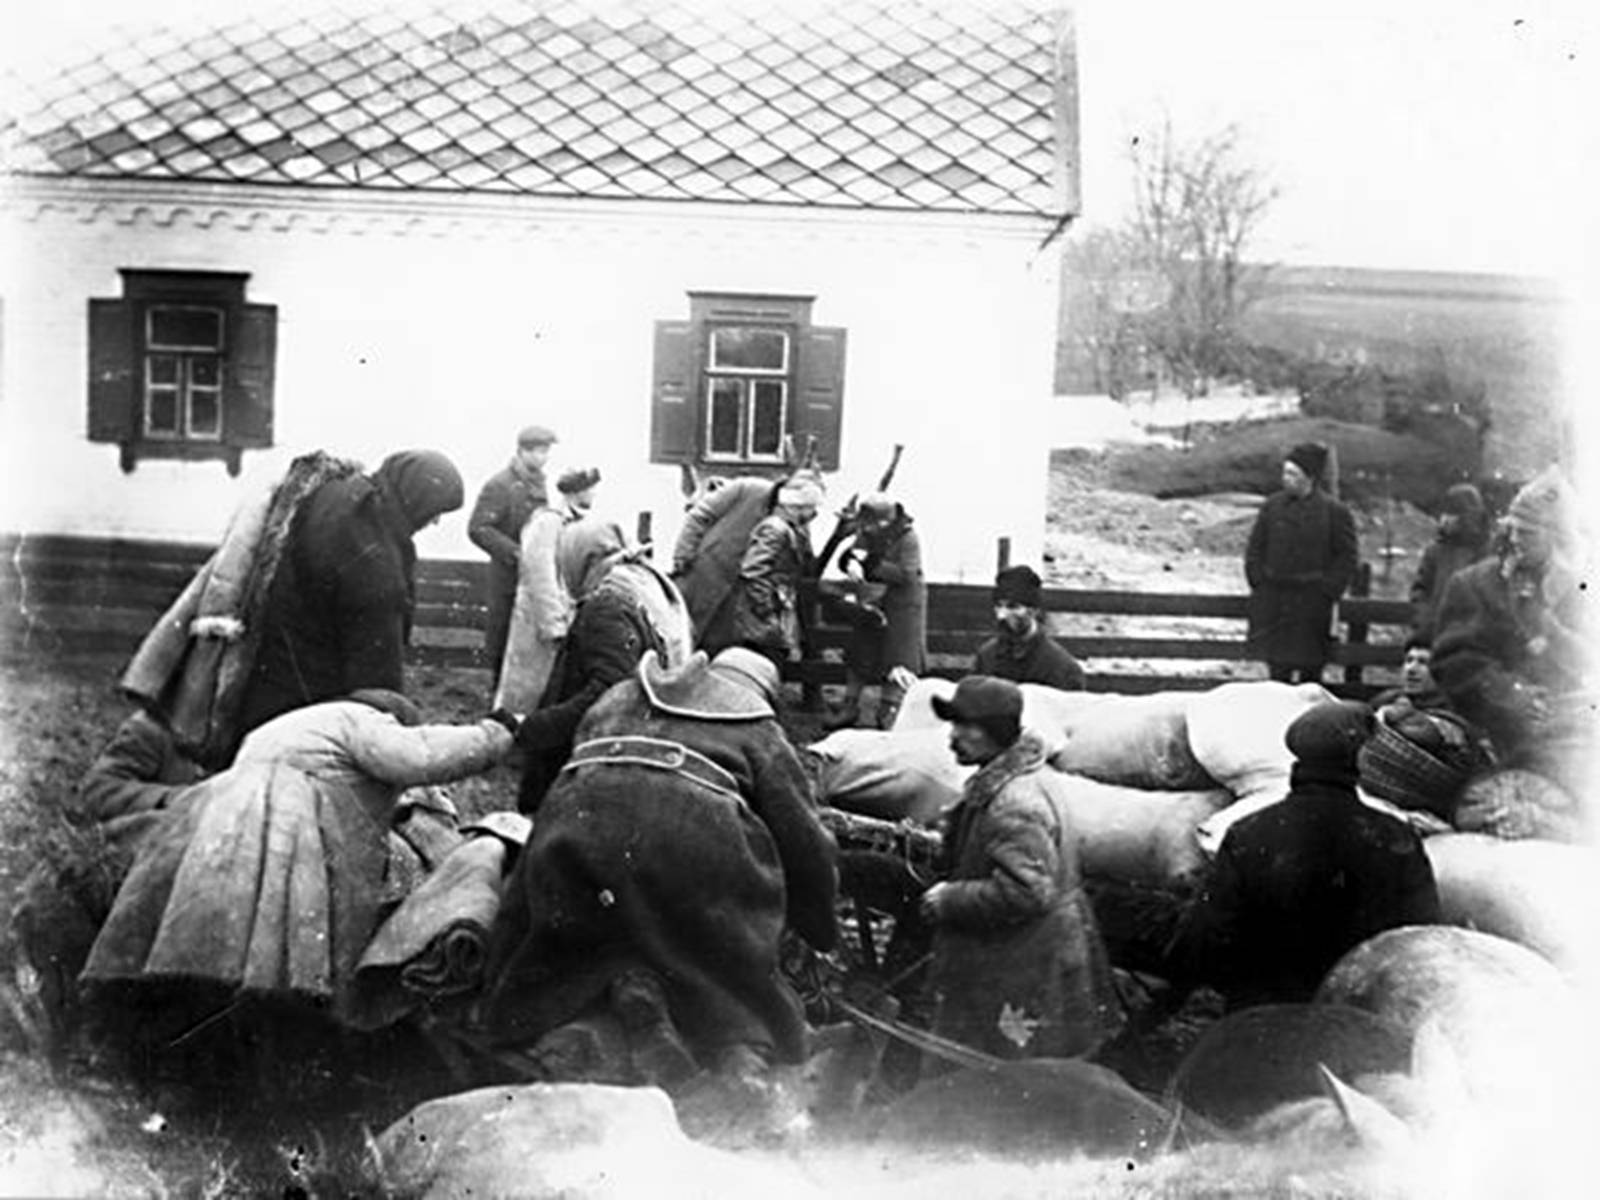 Голод 32. Голодомор 1932-1933 в Україні.